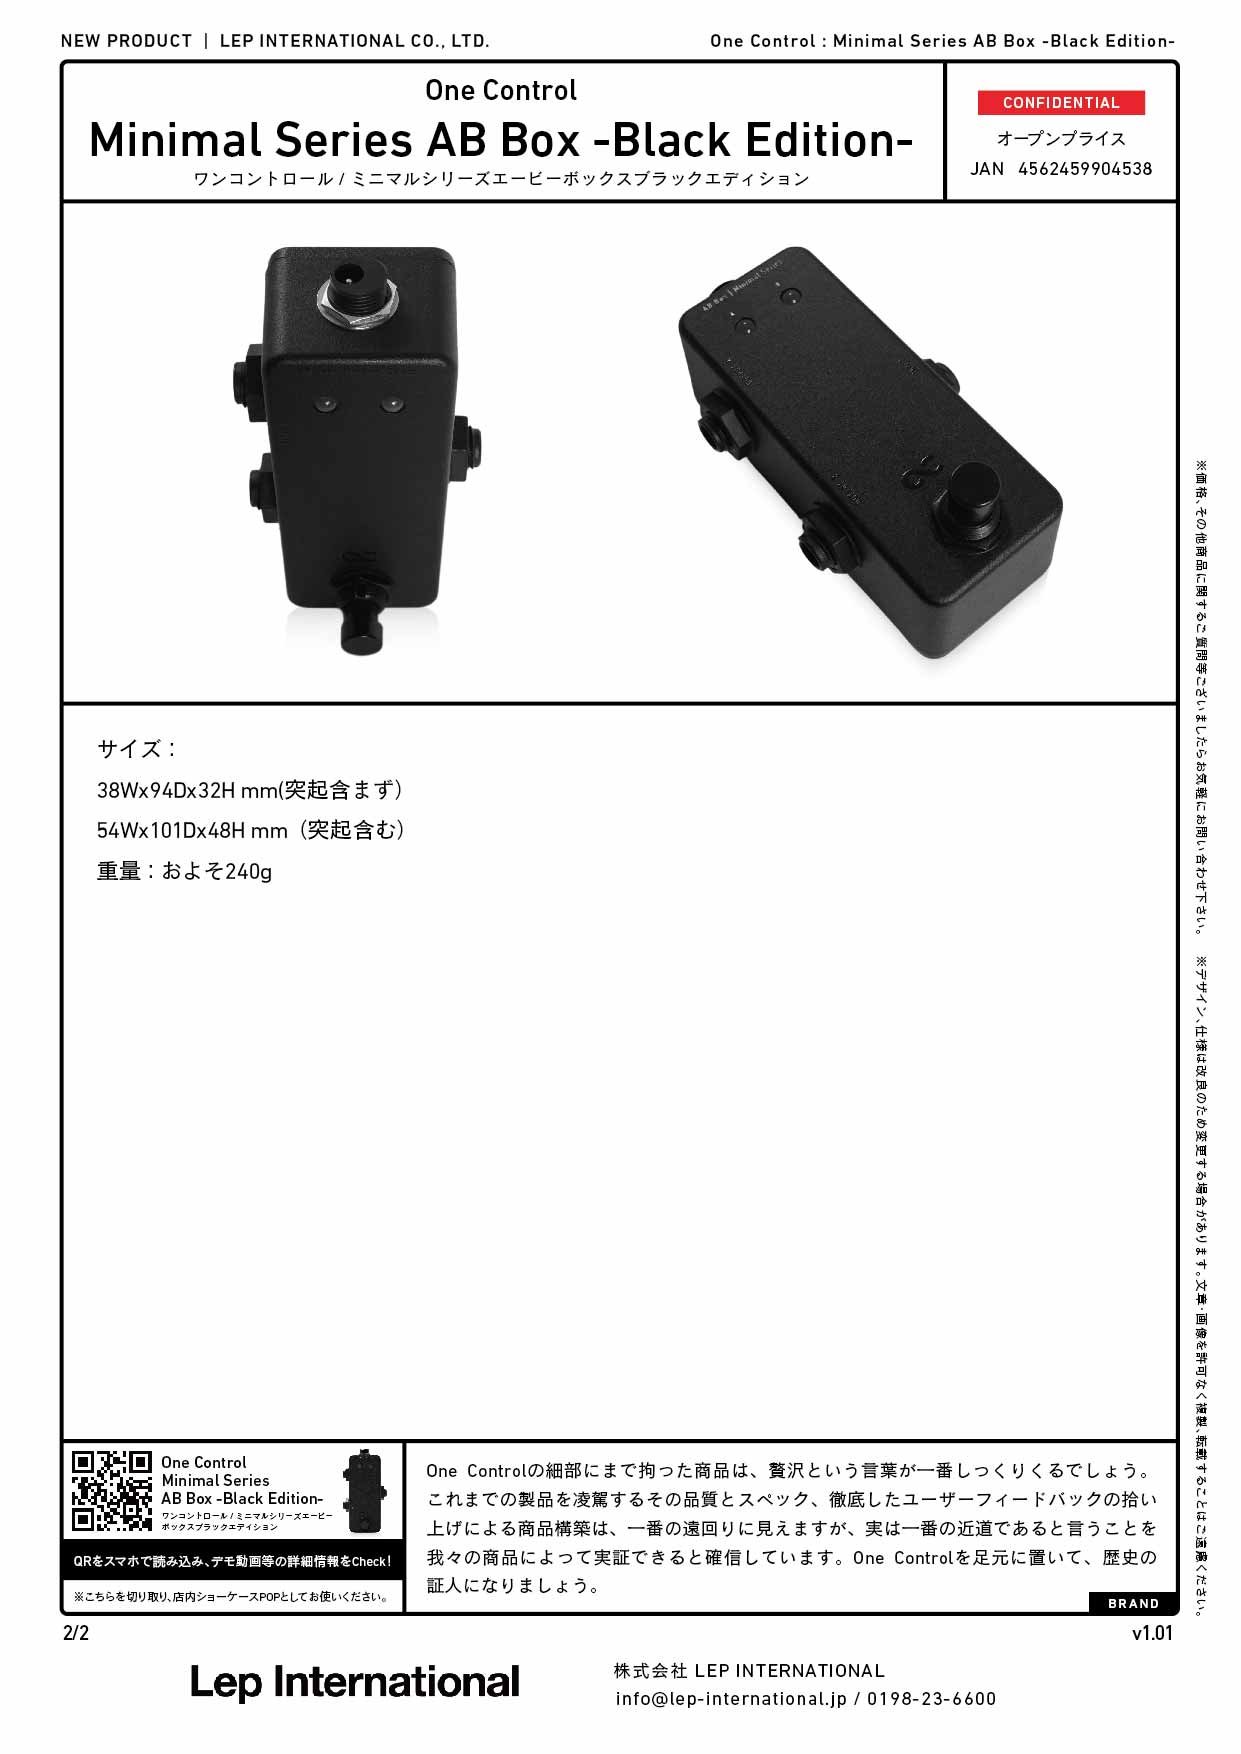 日本最大級の品揃え One Control Minimal Series AB BOX